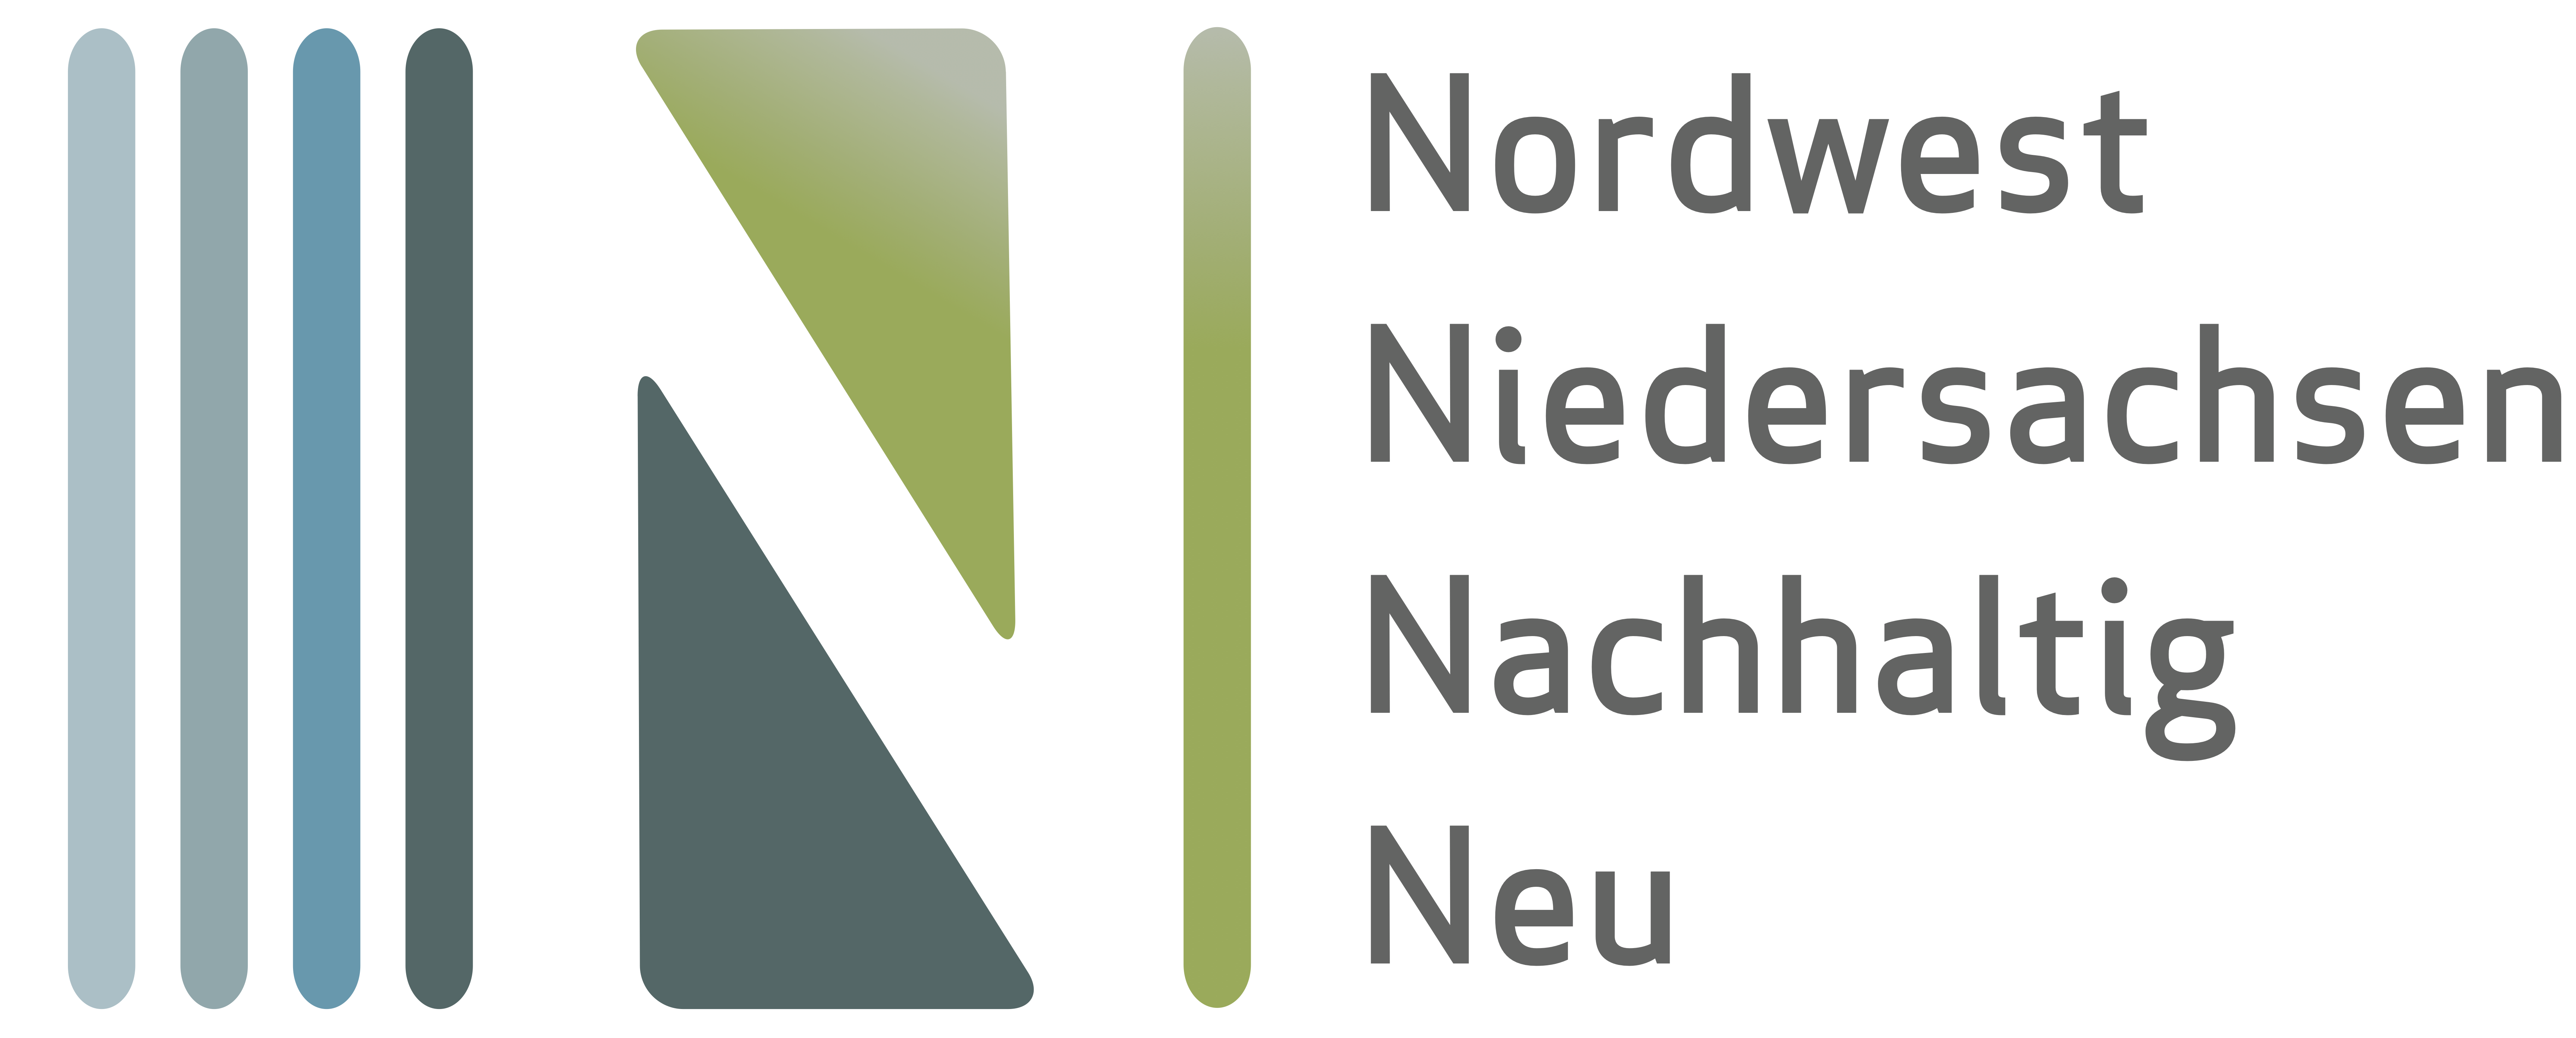 4N – Nordwest Niedersachsen Nachhaltig Neu